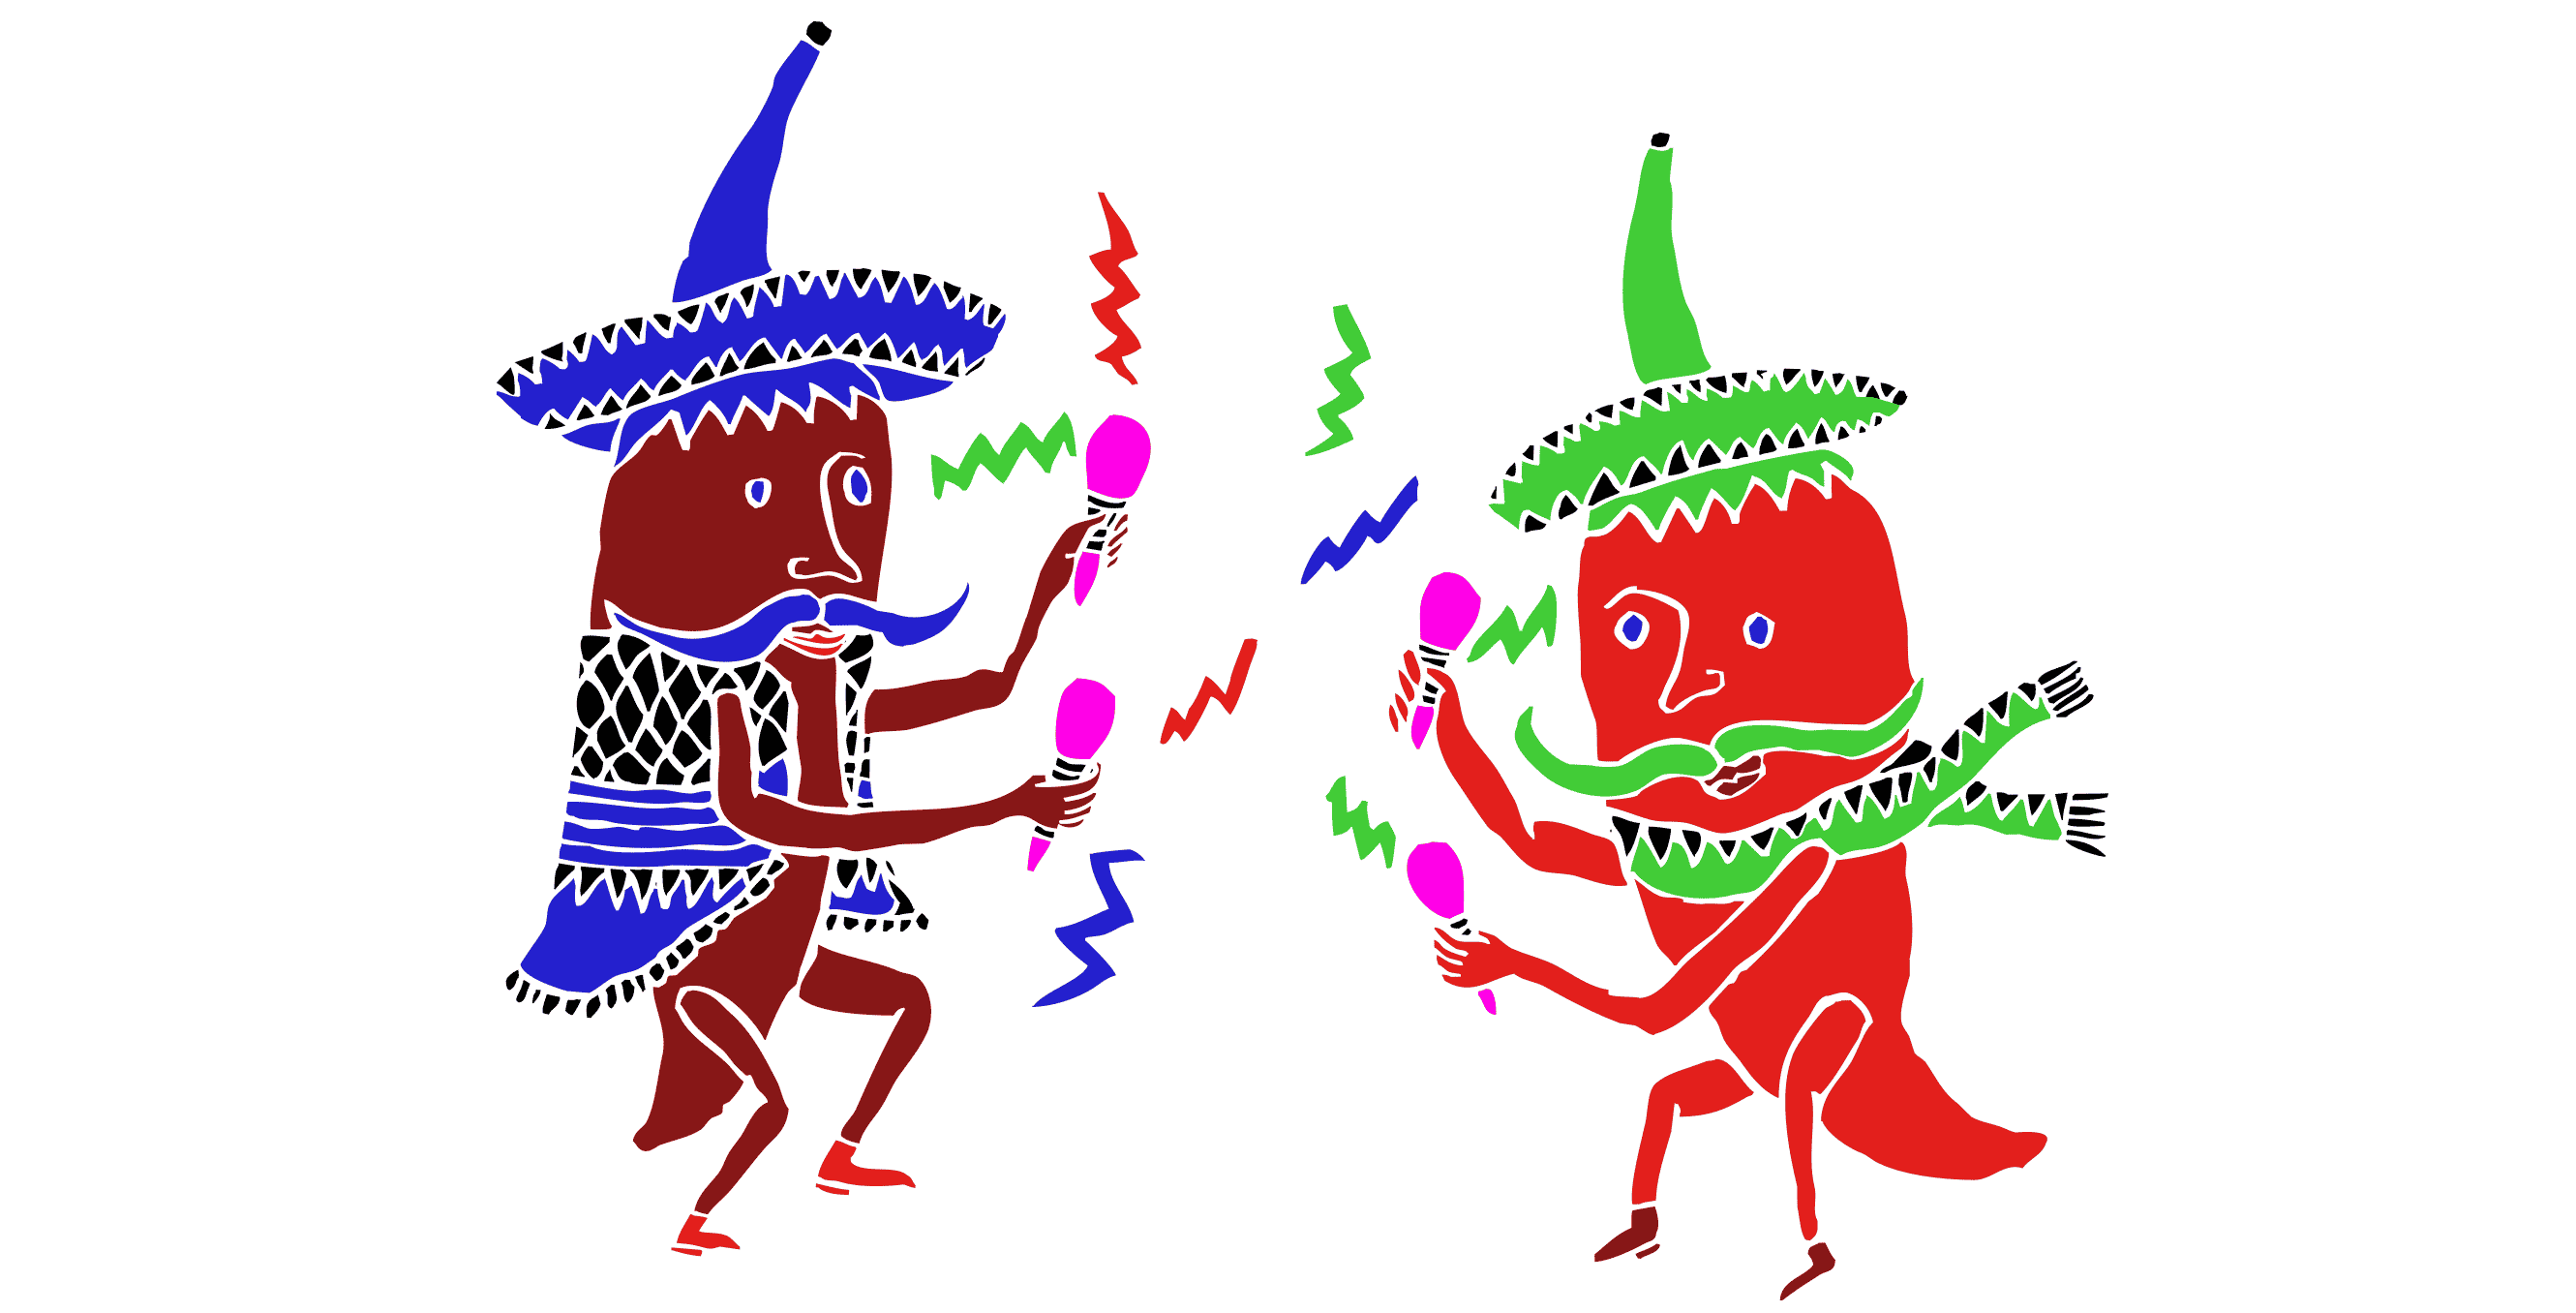 Dancing Peppers